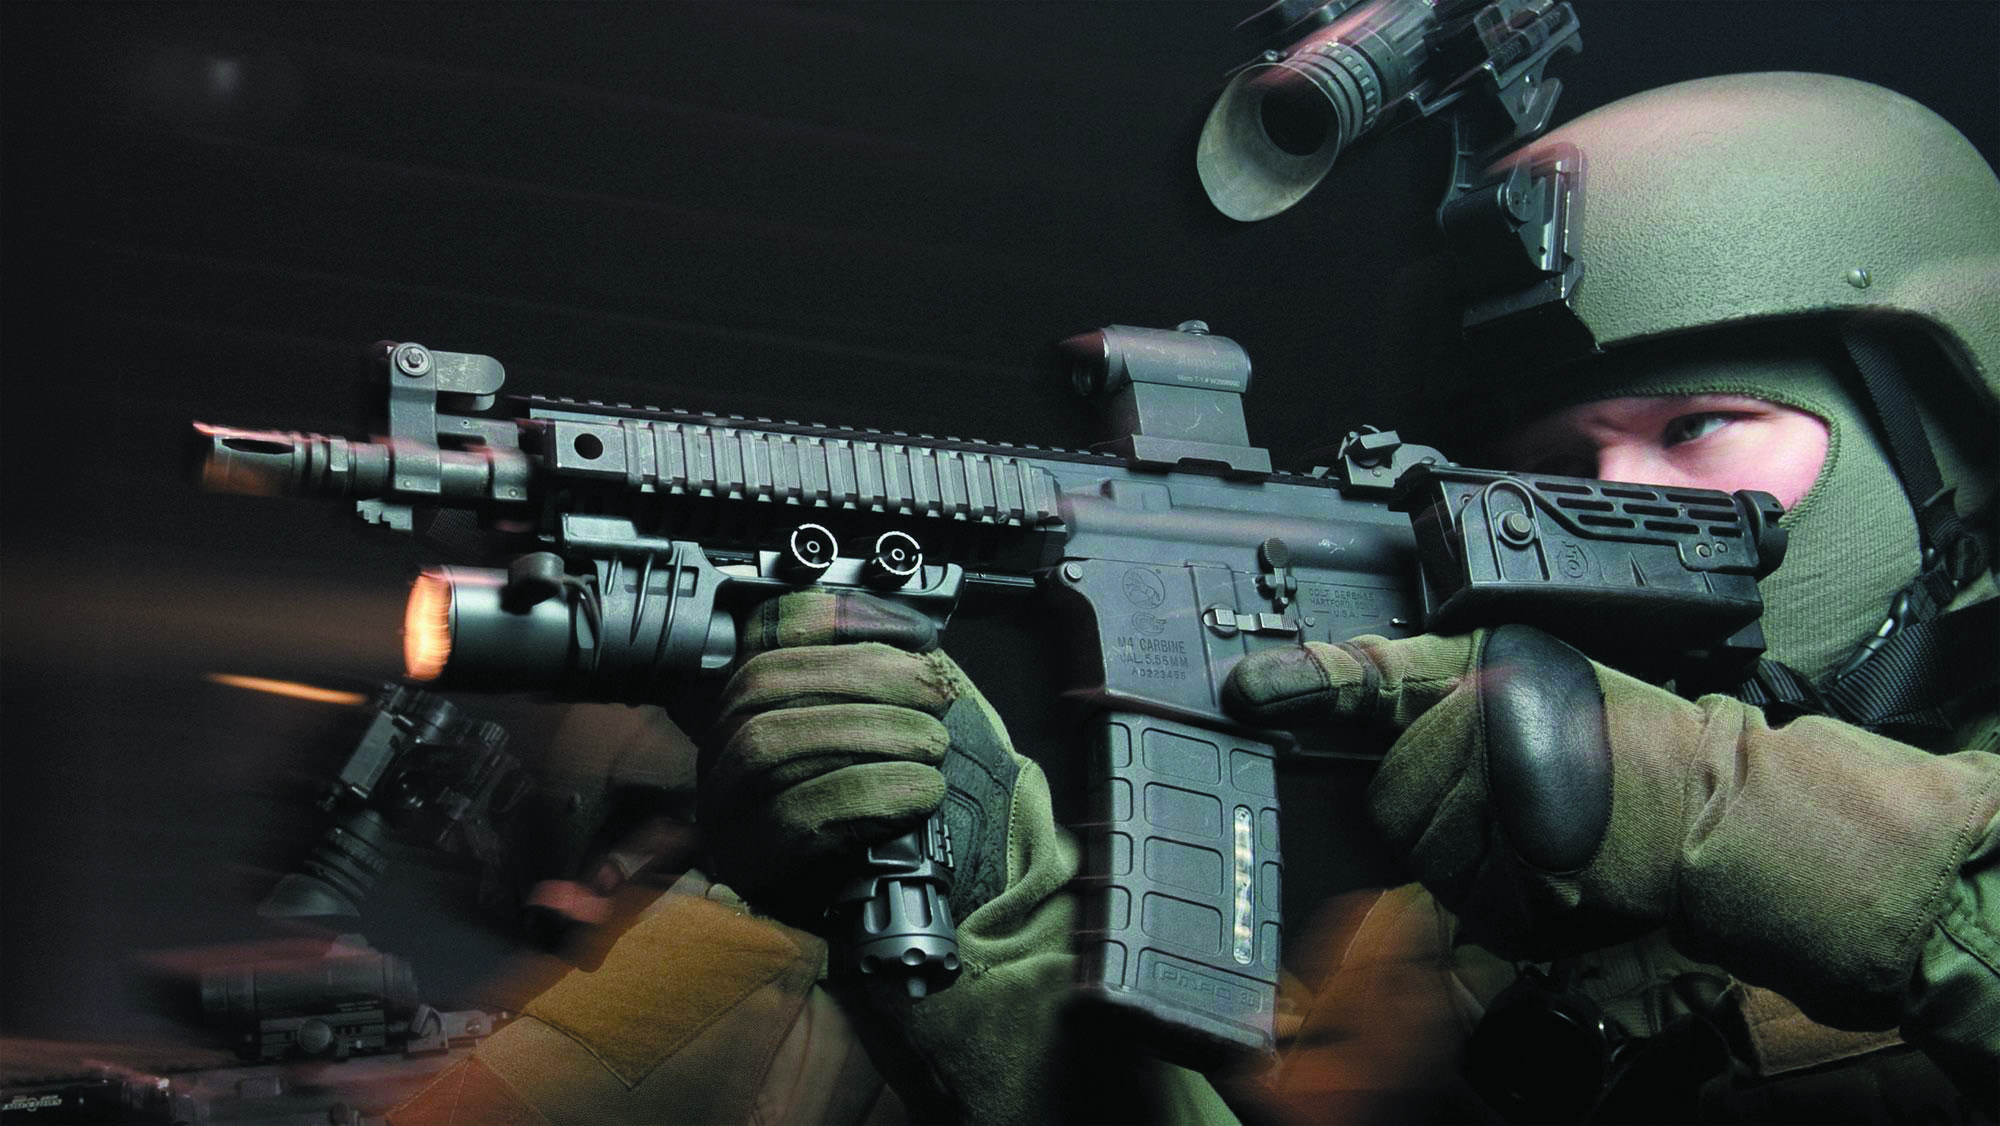 柯尔特公司根据特种部队需求研制的紧凑型步枪与传统ar步枪不同,可单